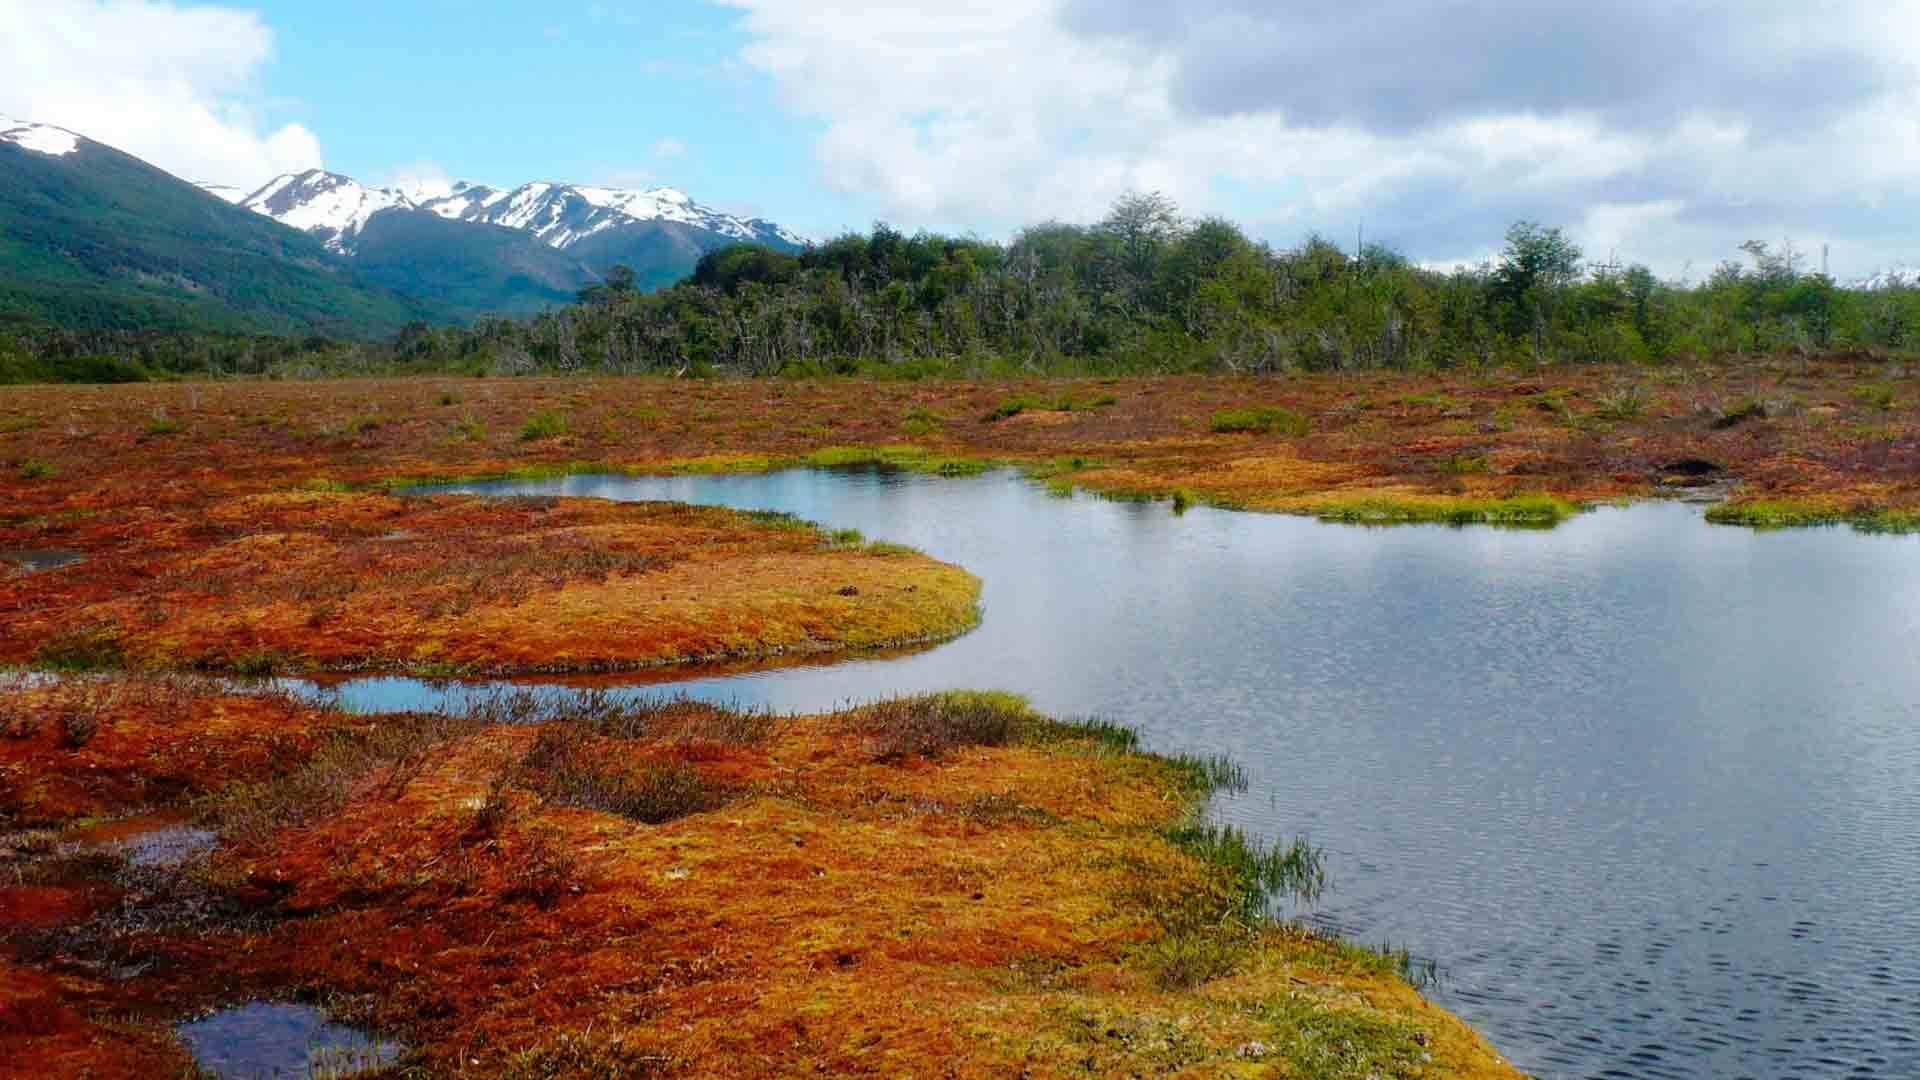 Explotación de turberas en Chile pone en peligro ecosistema clave para combatir el cambio climático